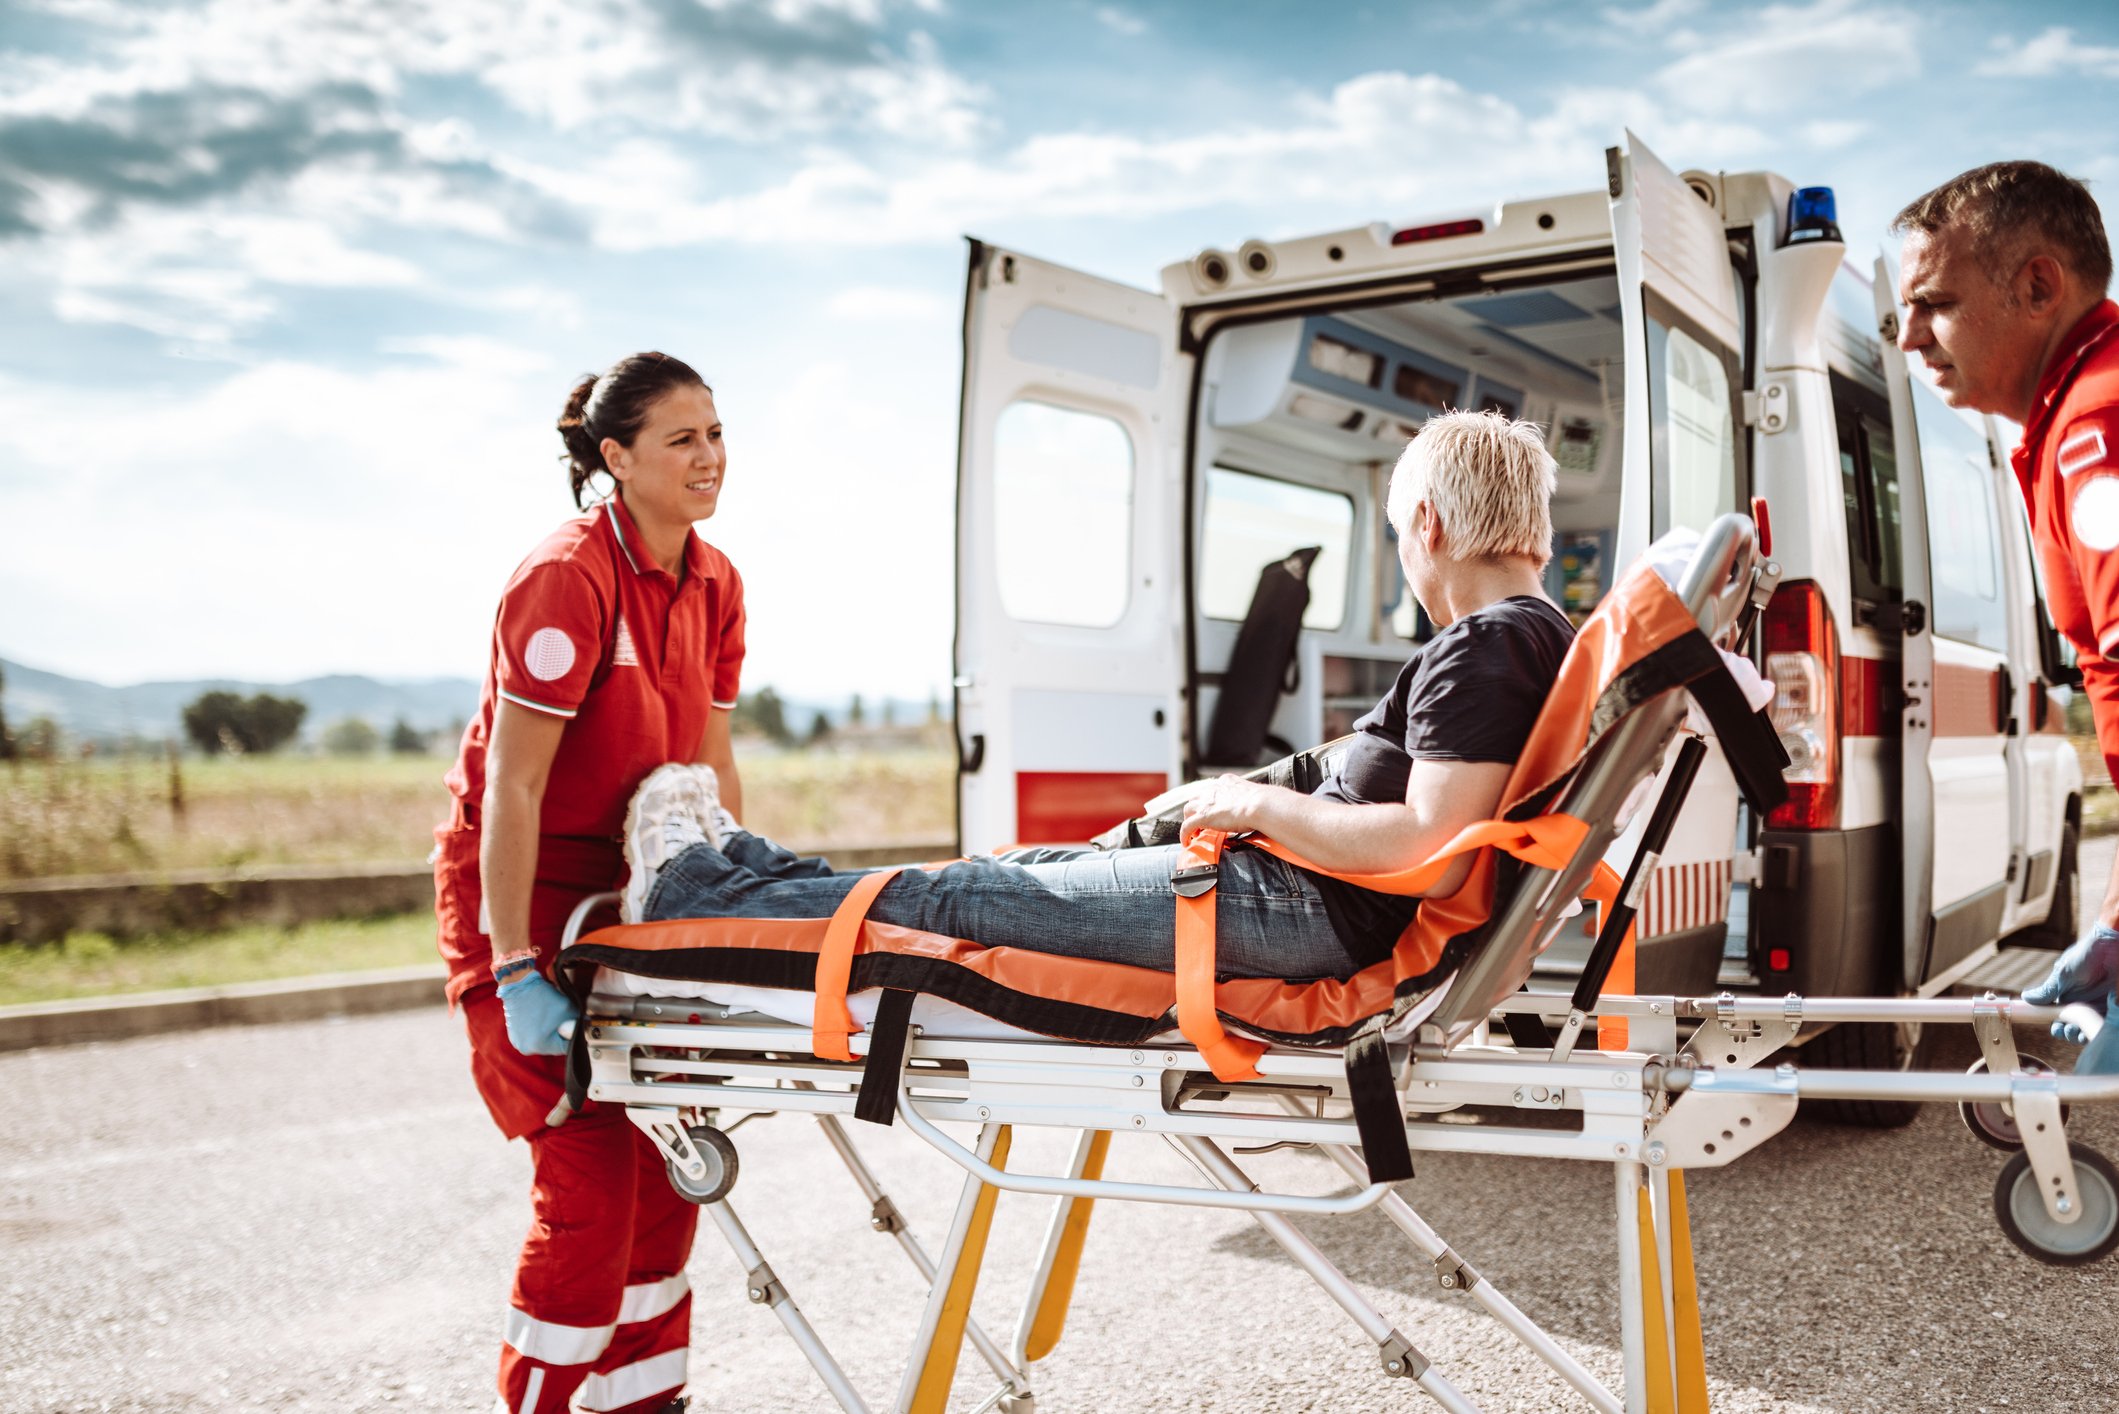 Frau wird von einem Krankenwagen abgeholt. | Quelle: Getty Images